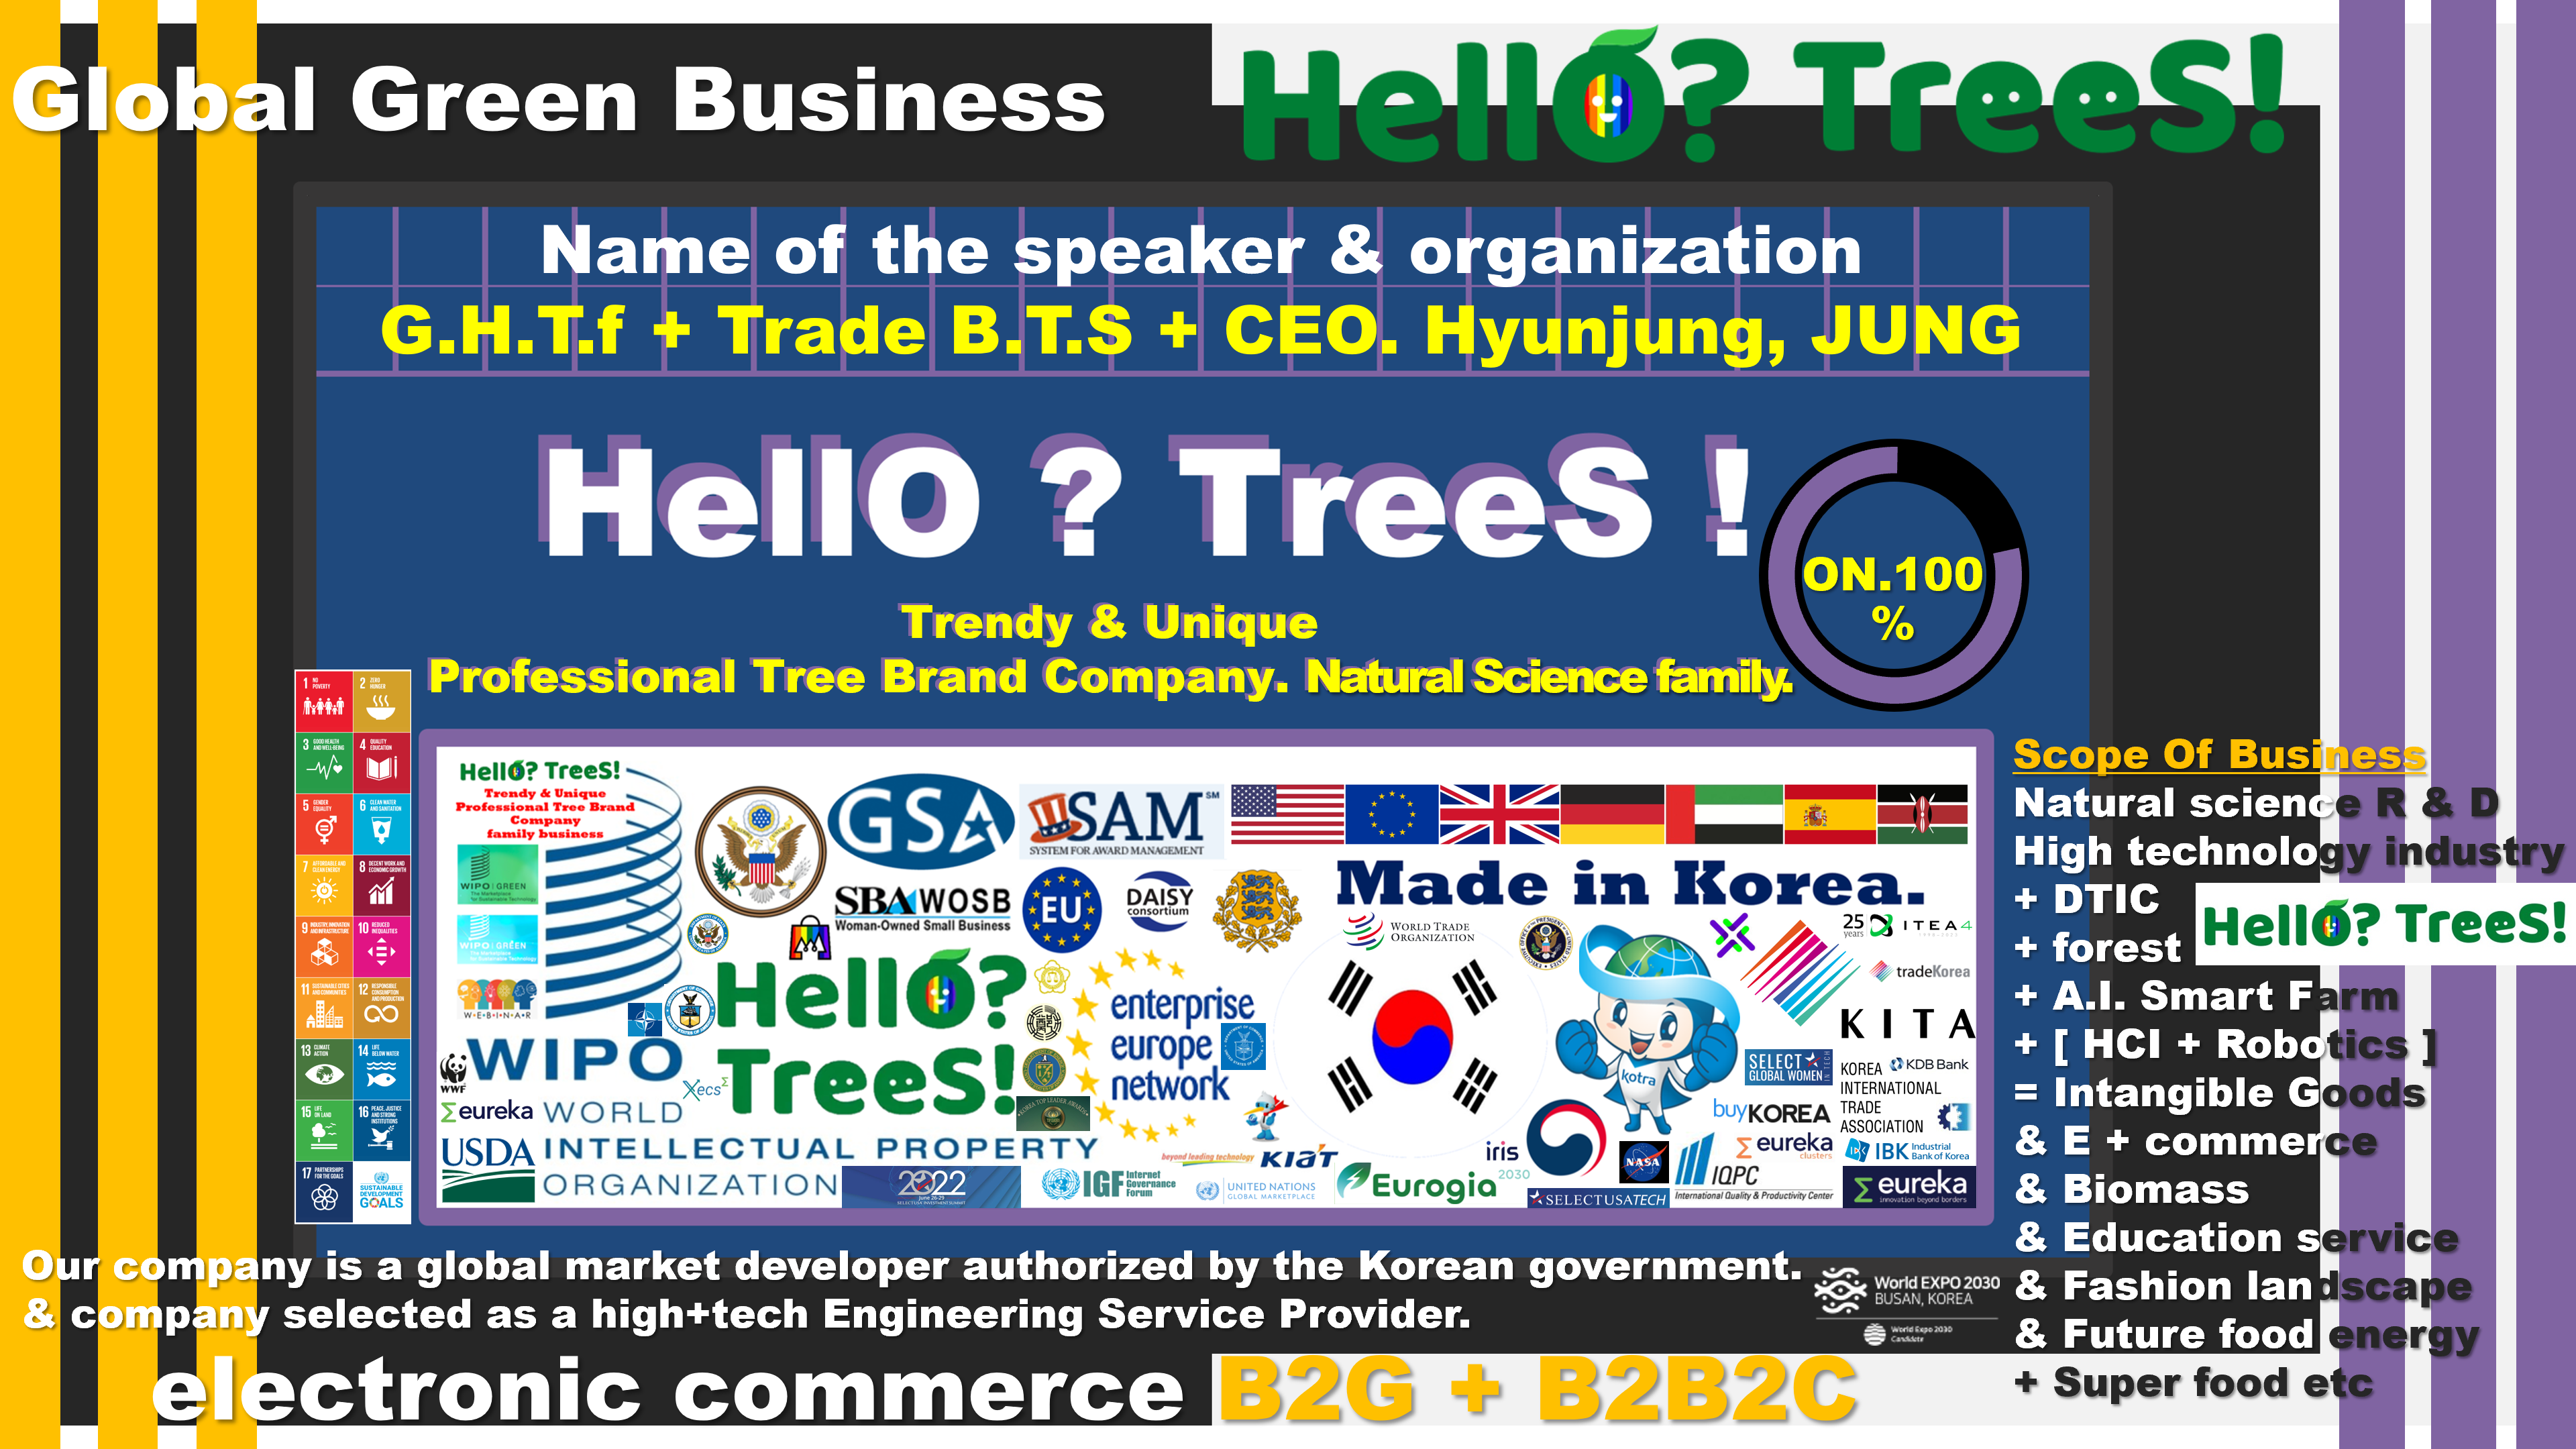 HellO TreeS 3G 4G 5G A_I_ Smart Farm and A_I_ Smart RoBot